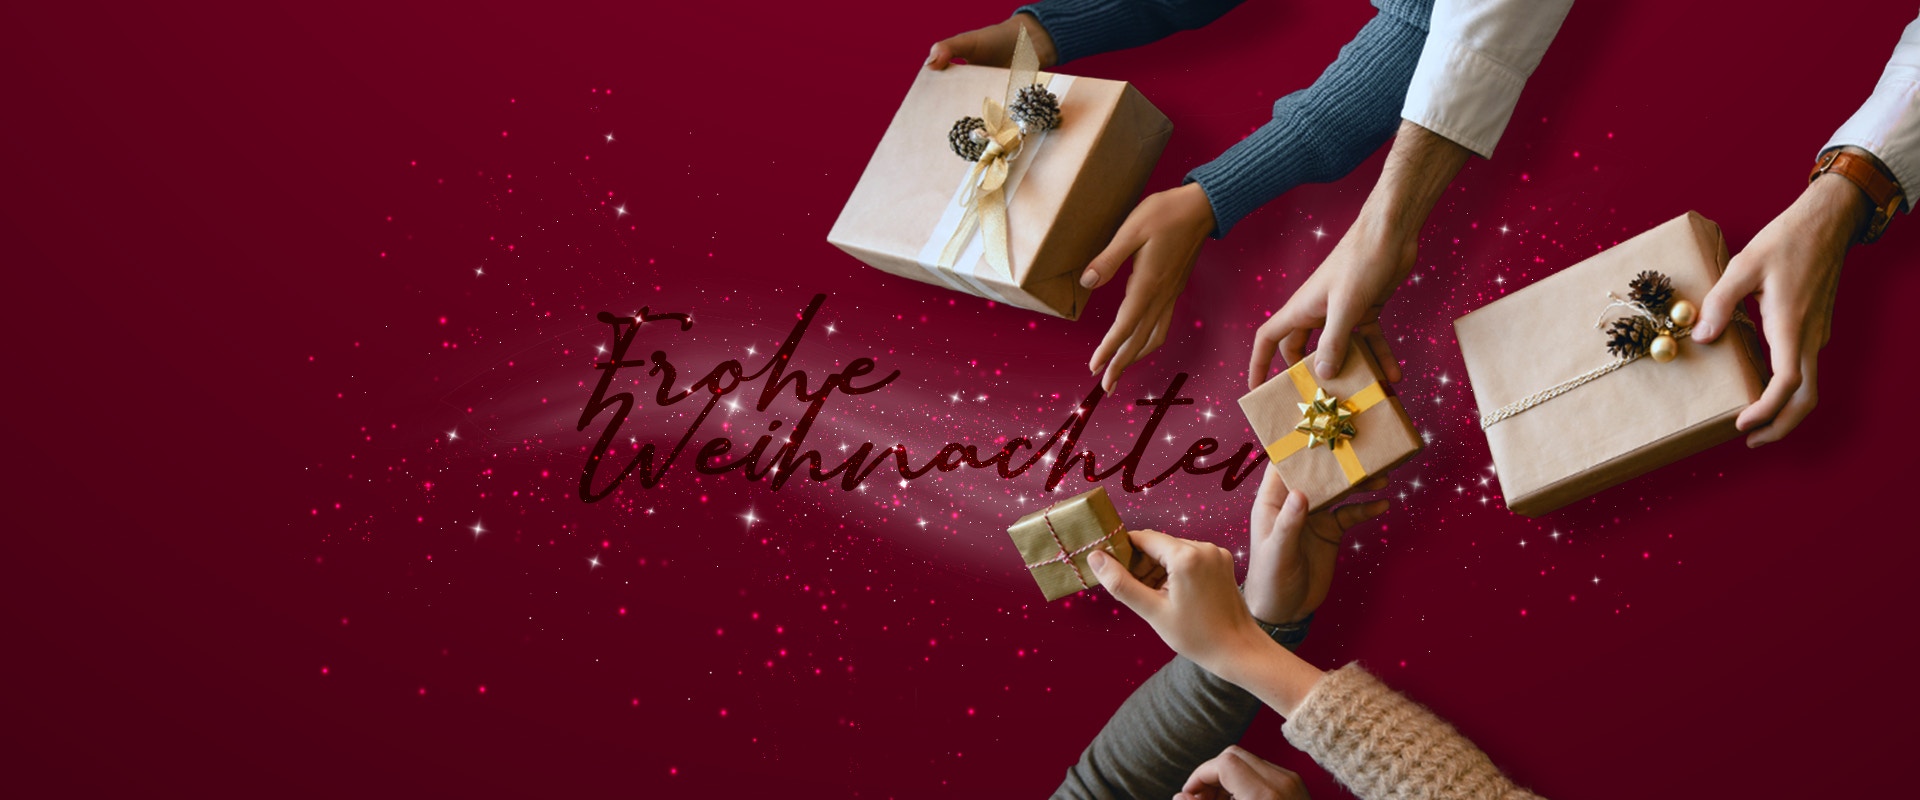 Der Schriftzug "Frohe Weihnachten", Hände und Geschenke.